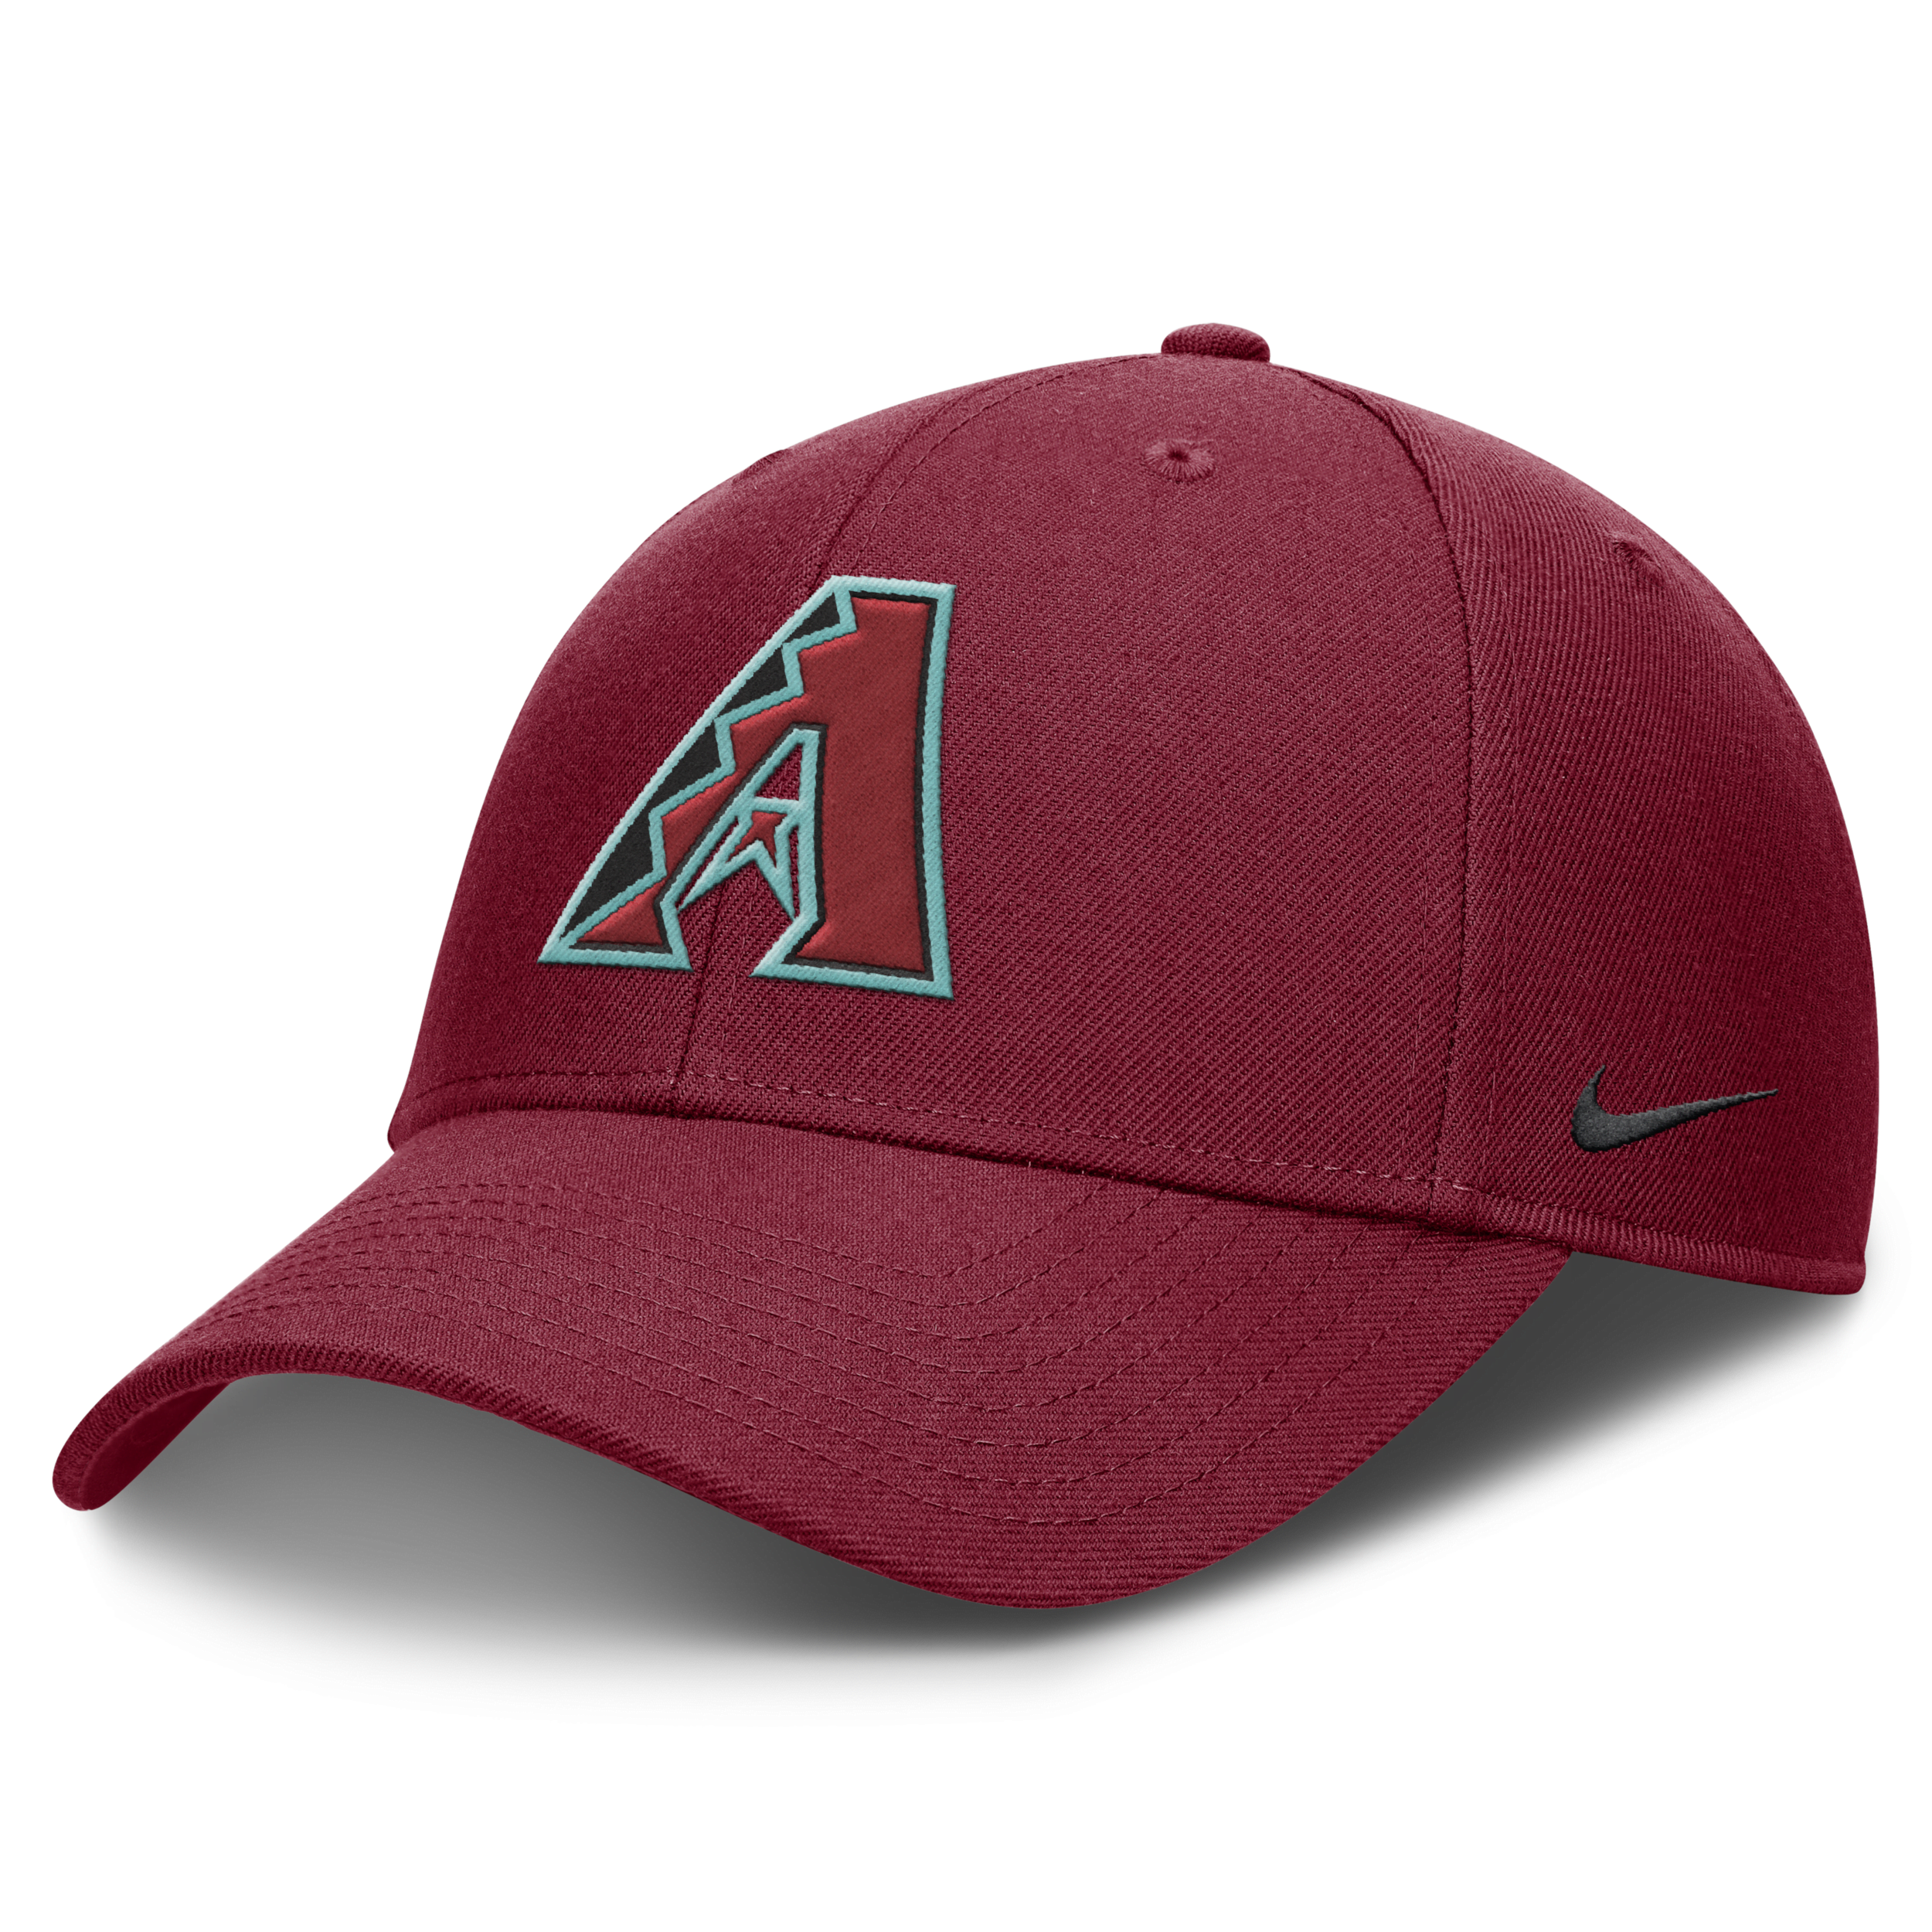 Nike Red Arizona Diamondbacks Evergreen Club Performance Adjustable Hat